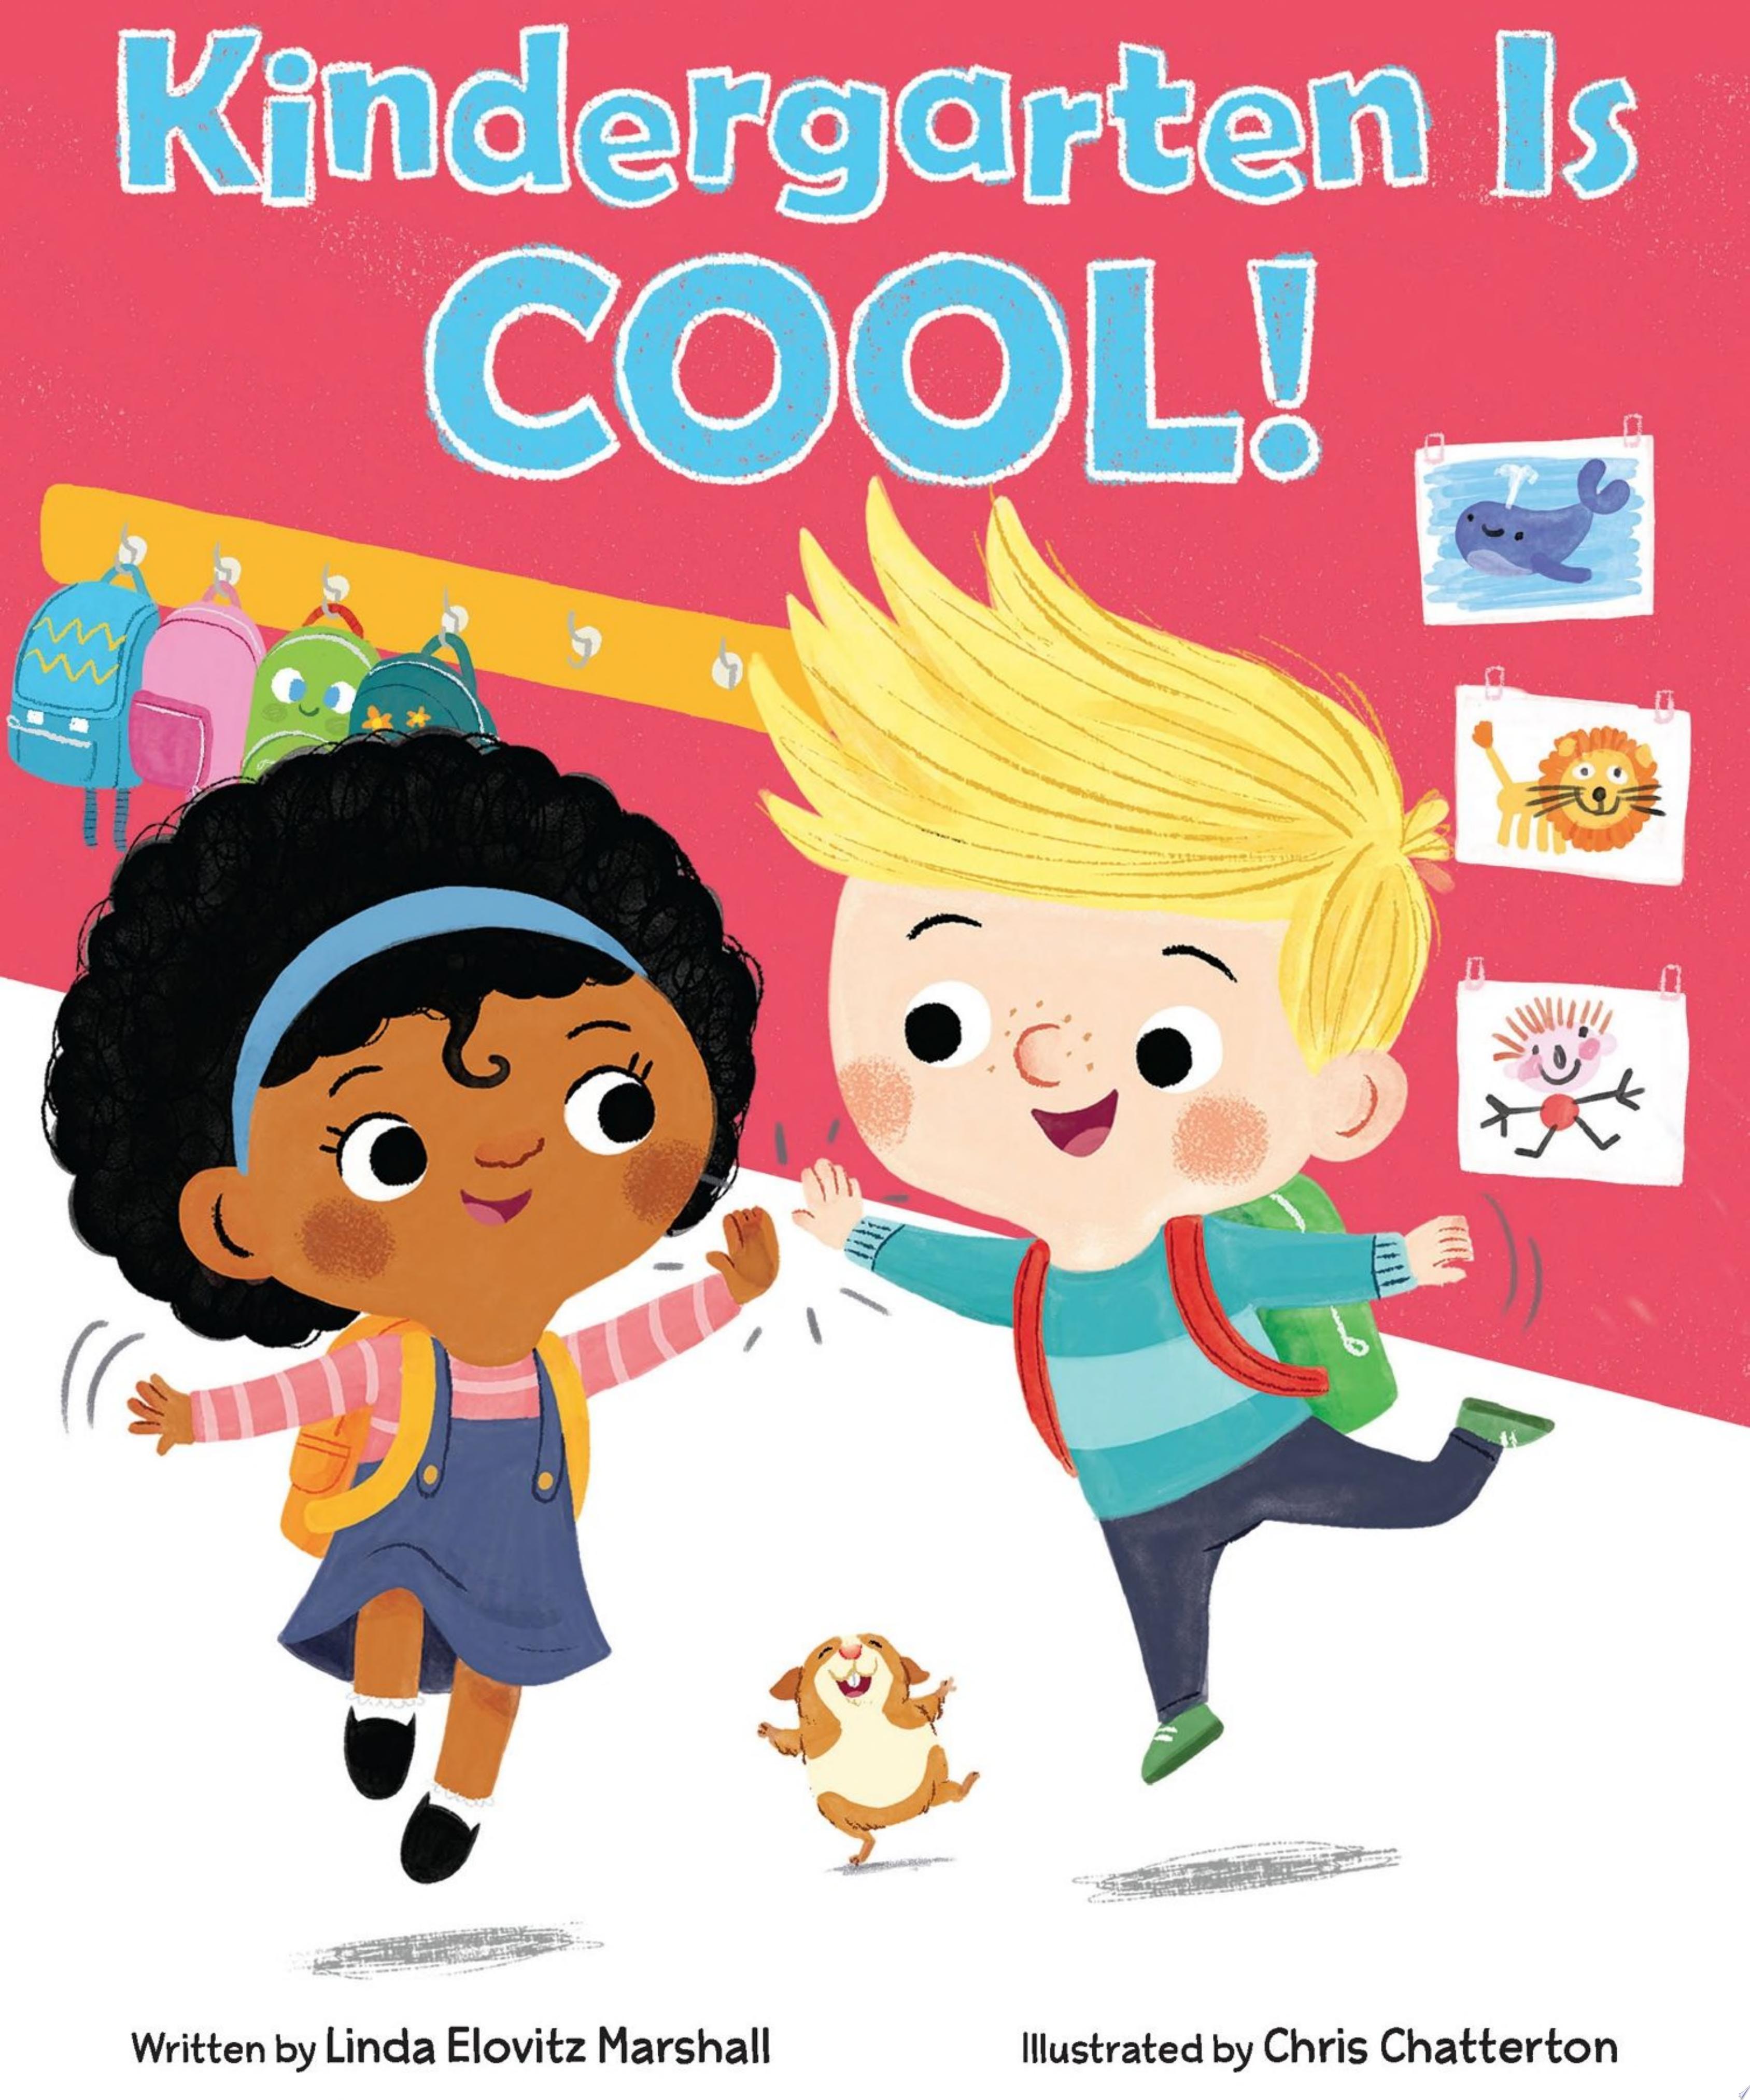 Image for "Kindergarten is Cool!"